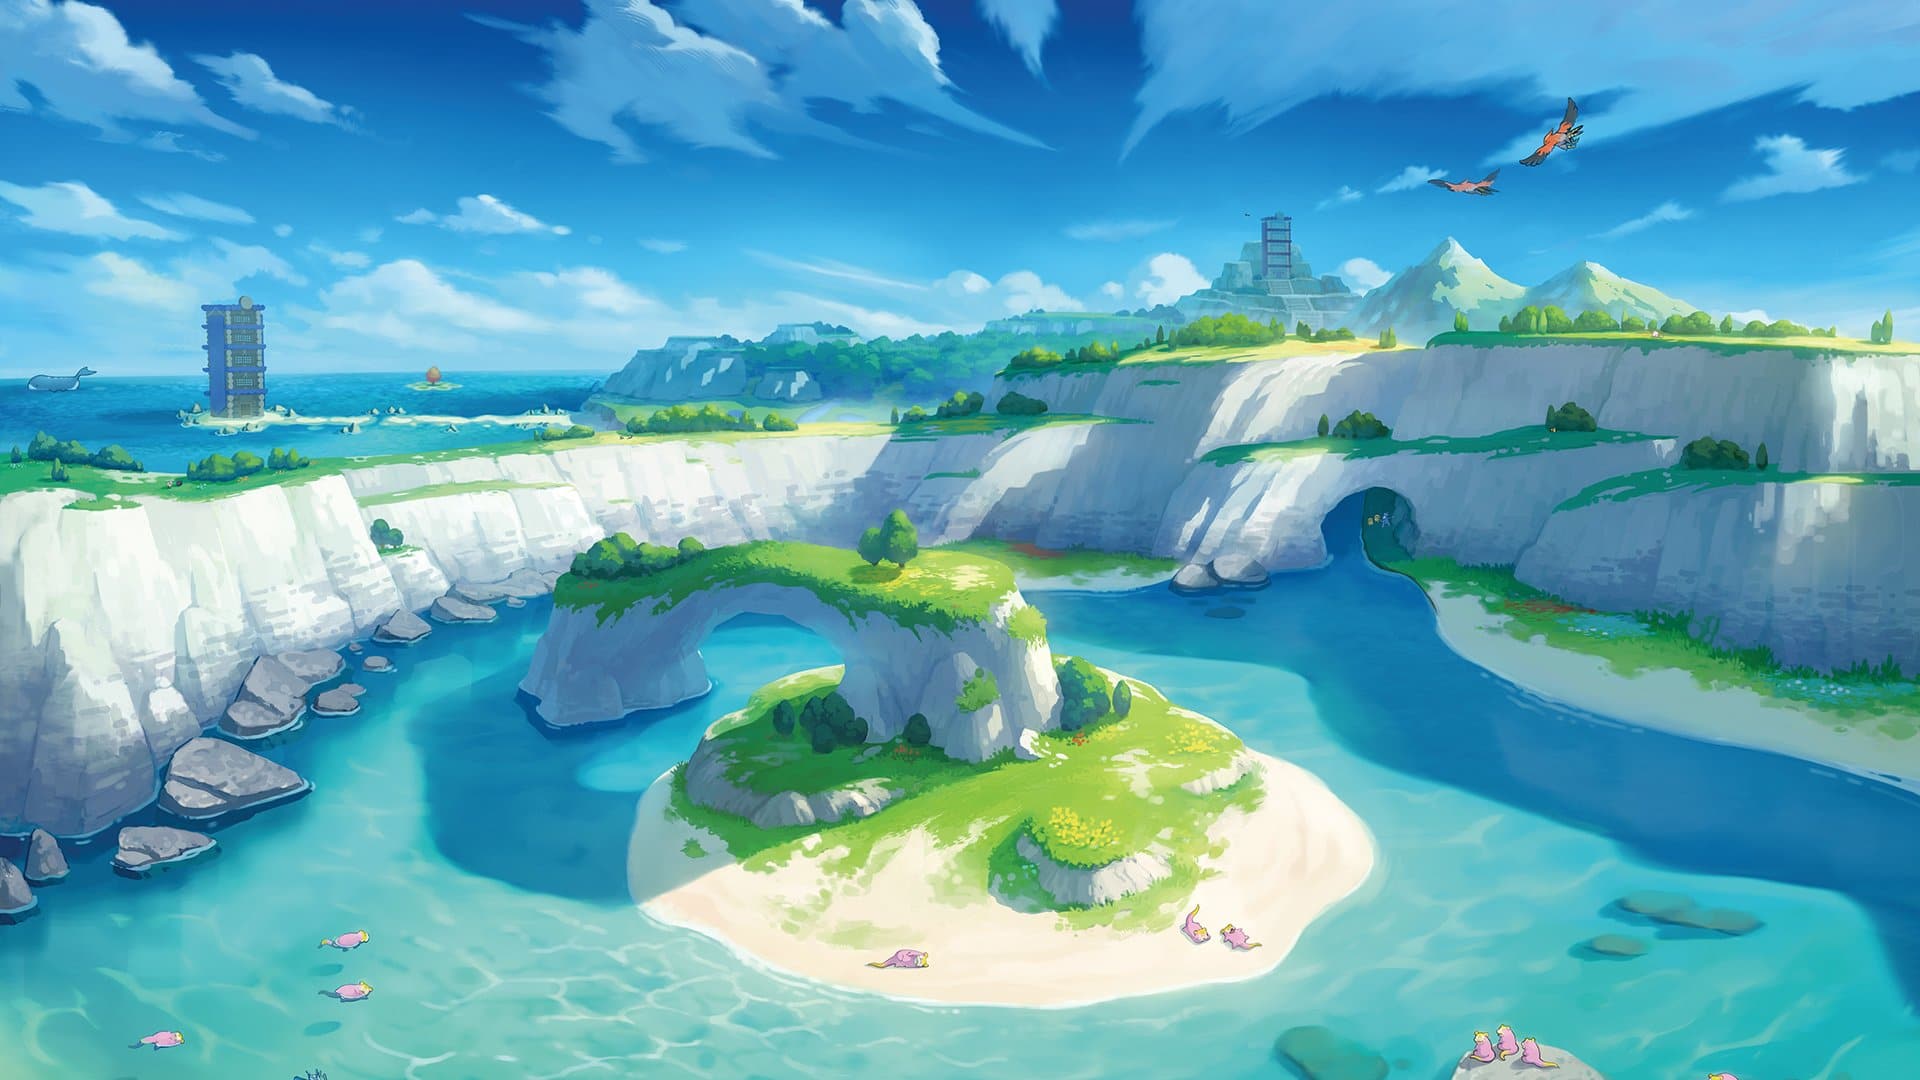 Dentro de 24 horas podremos conocer novedades sobre el DLC de La isla de la armadura de Pokémon Espada y Escudo